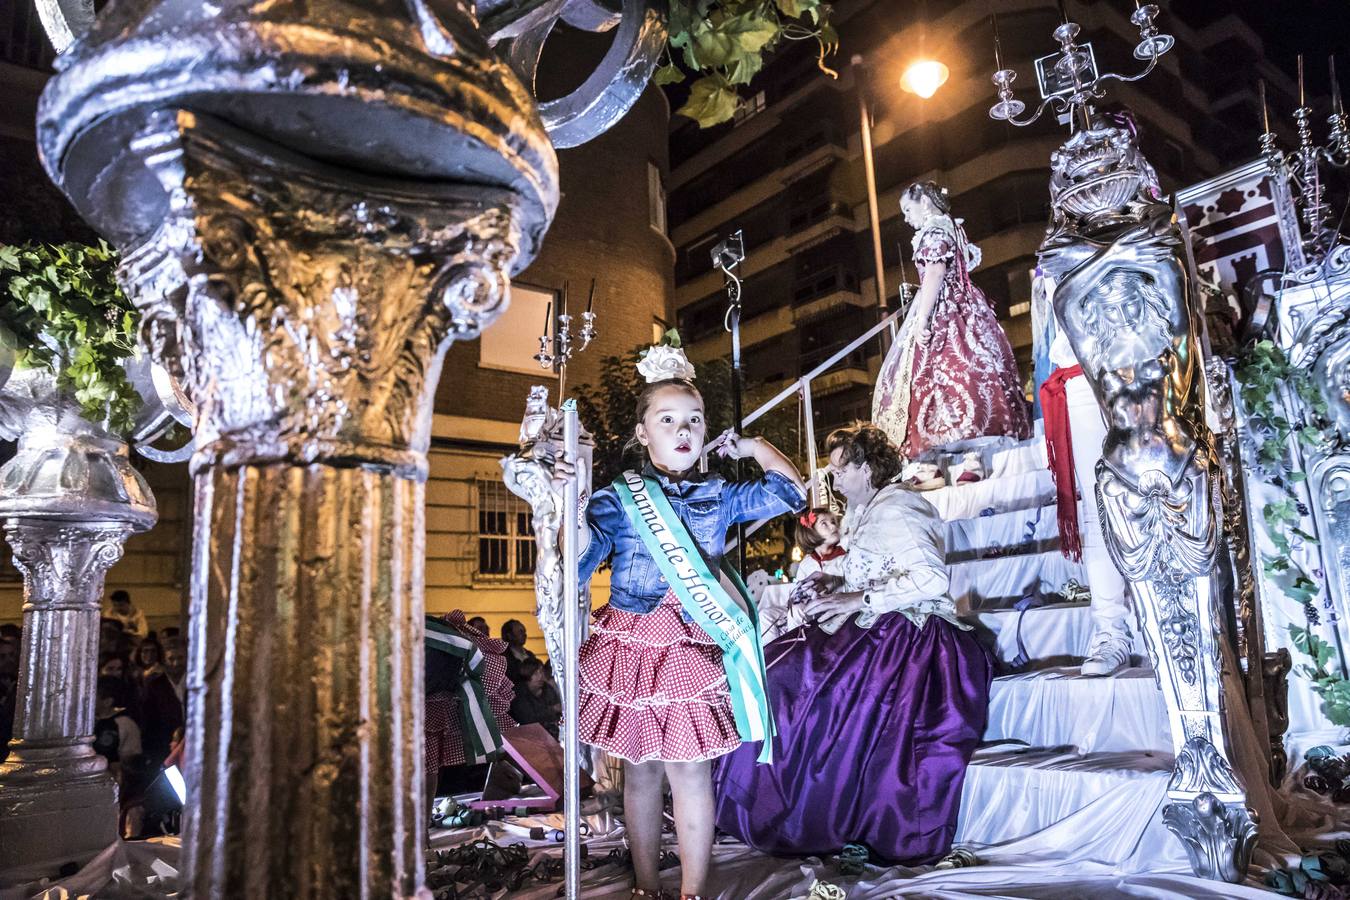 La carroza de la Federación de Casas Regionales, alusiva al lujo de disfrutar del Rioja en la mesa, ha ganado hoy el concurso del tradicional desfile de carrozas de las Fiestas de San Mateo y 61 Vendimia Riojana, de Logroño.